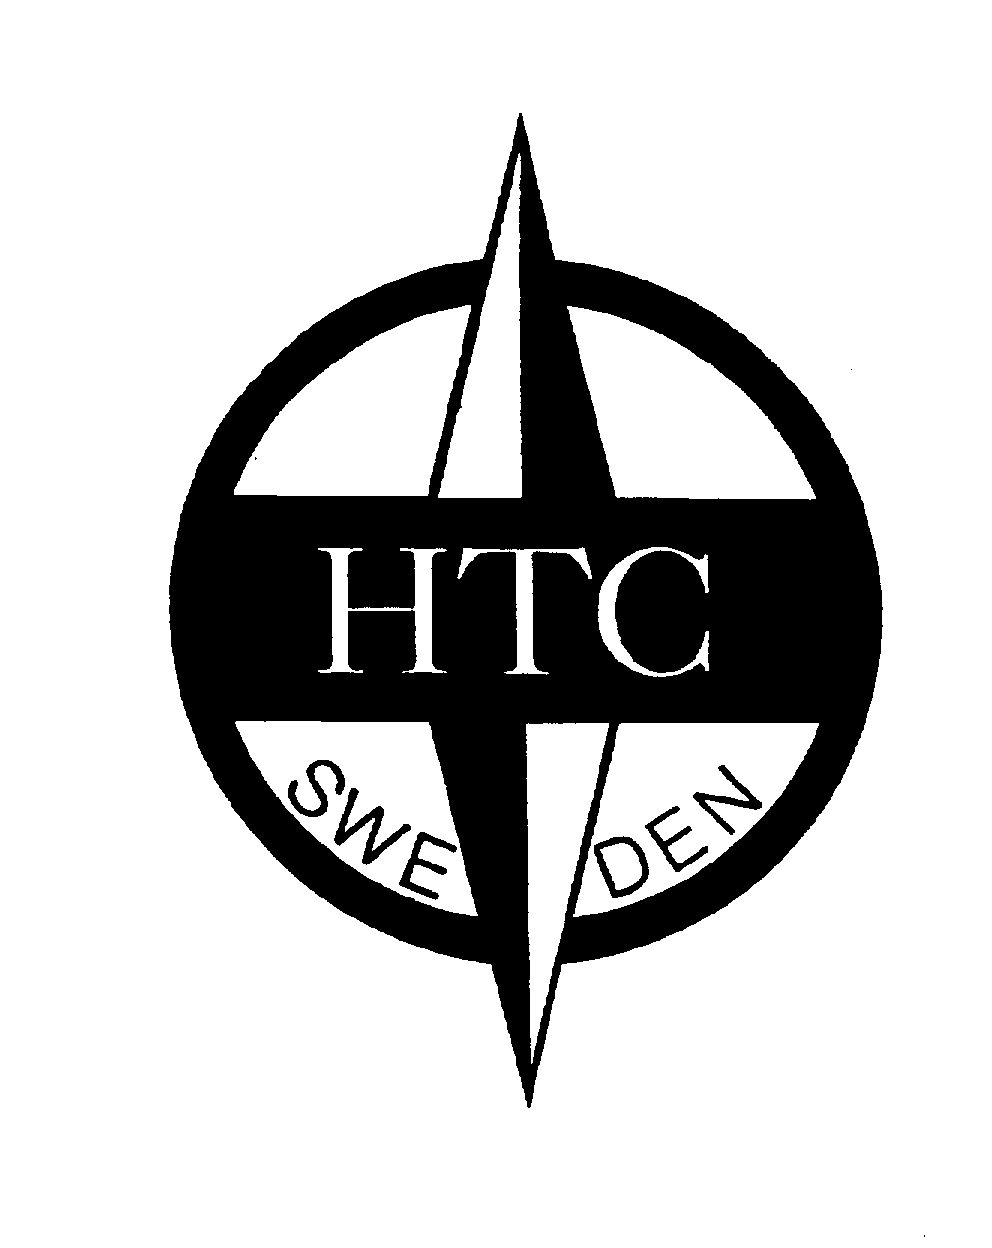  HTC SWEDEN